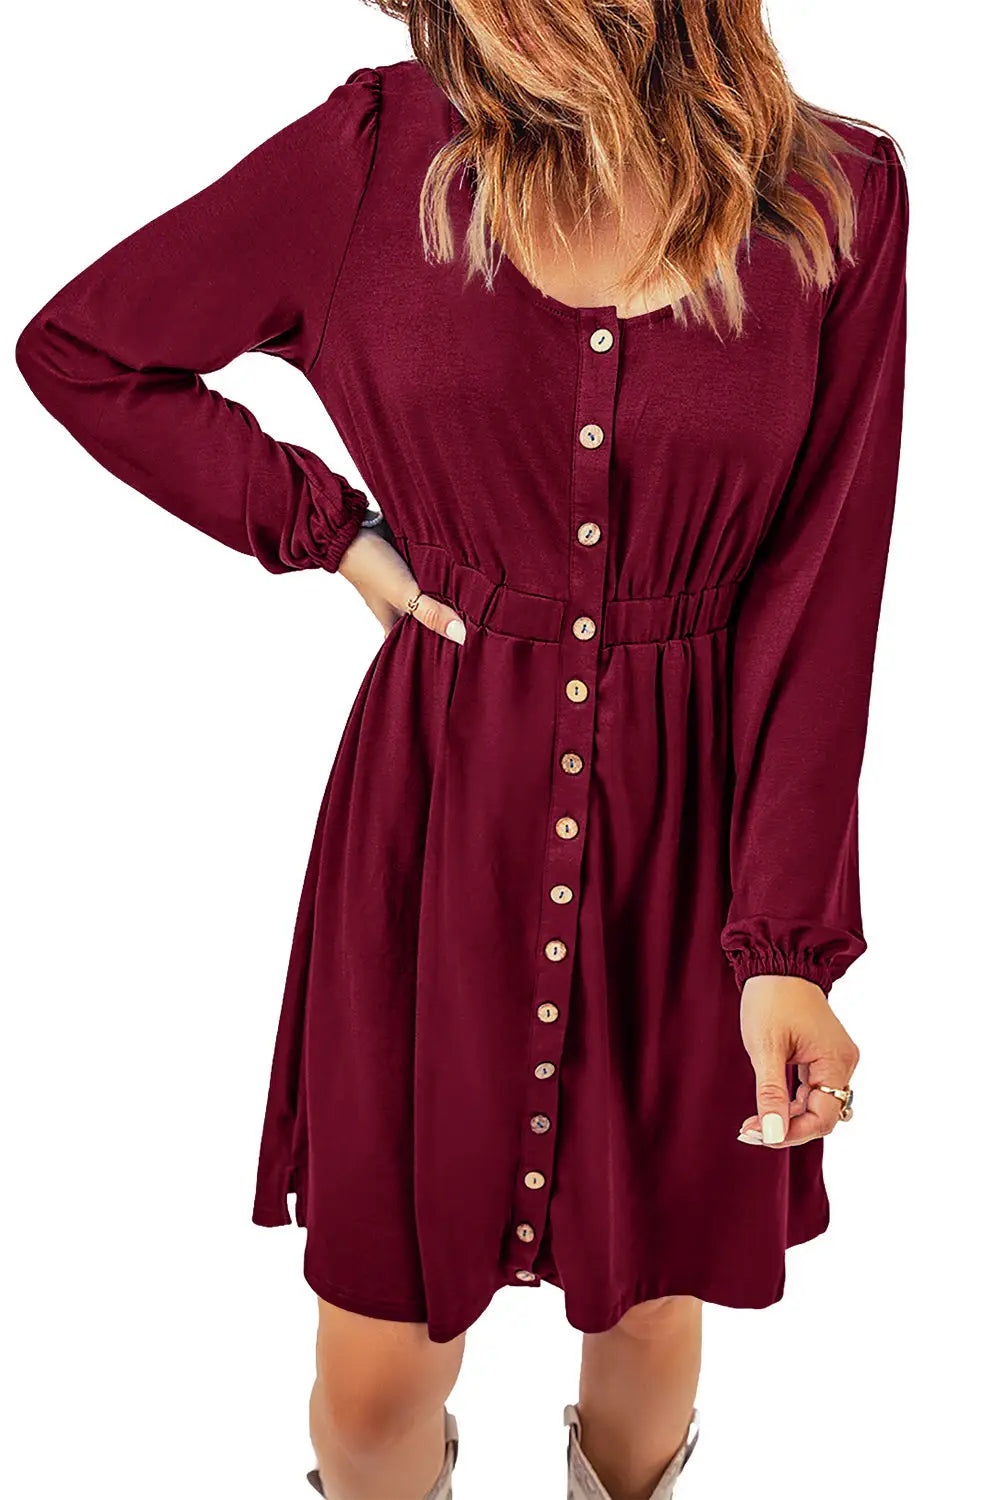 Red button up high waist long sleeve dress - midi dresses